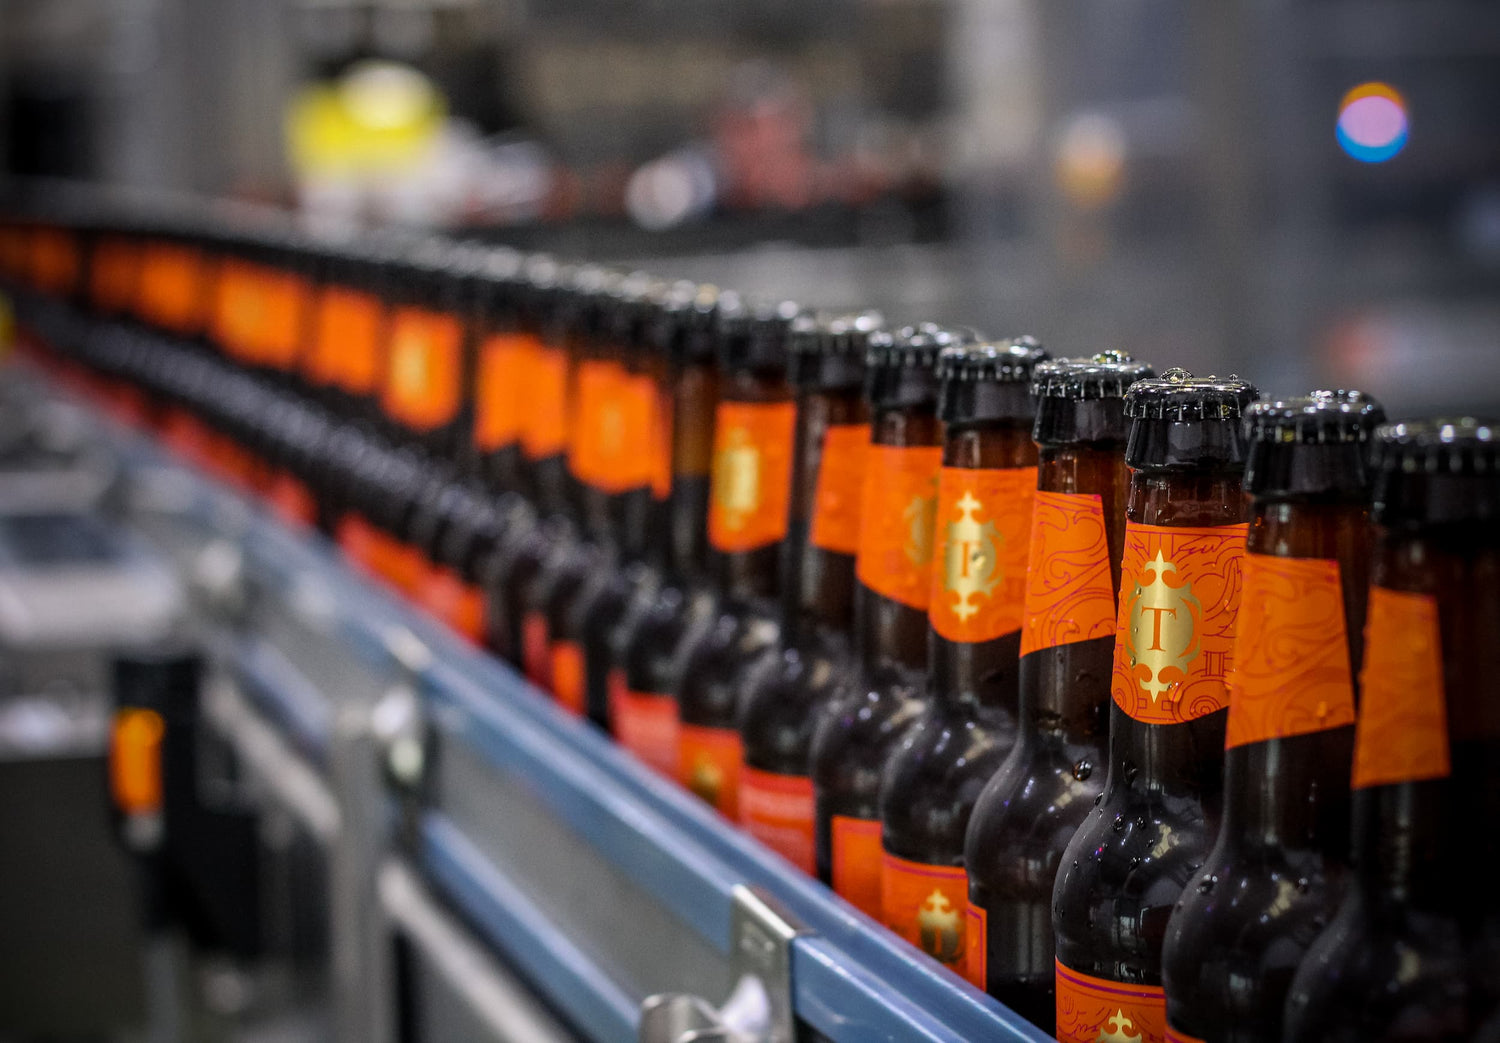 Jaipur Bottles on the bottling line at Thornbridge Brewery